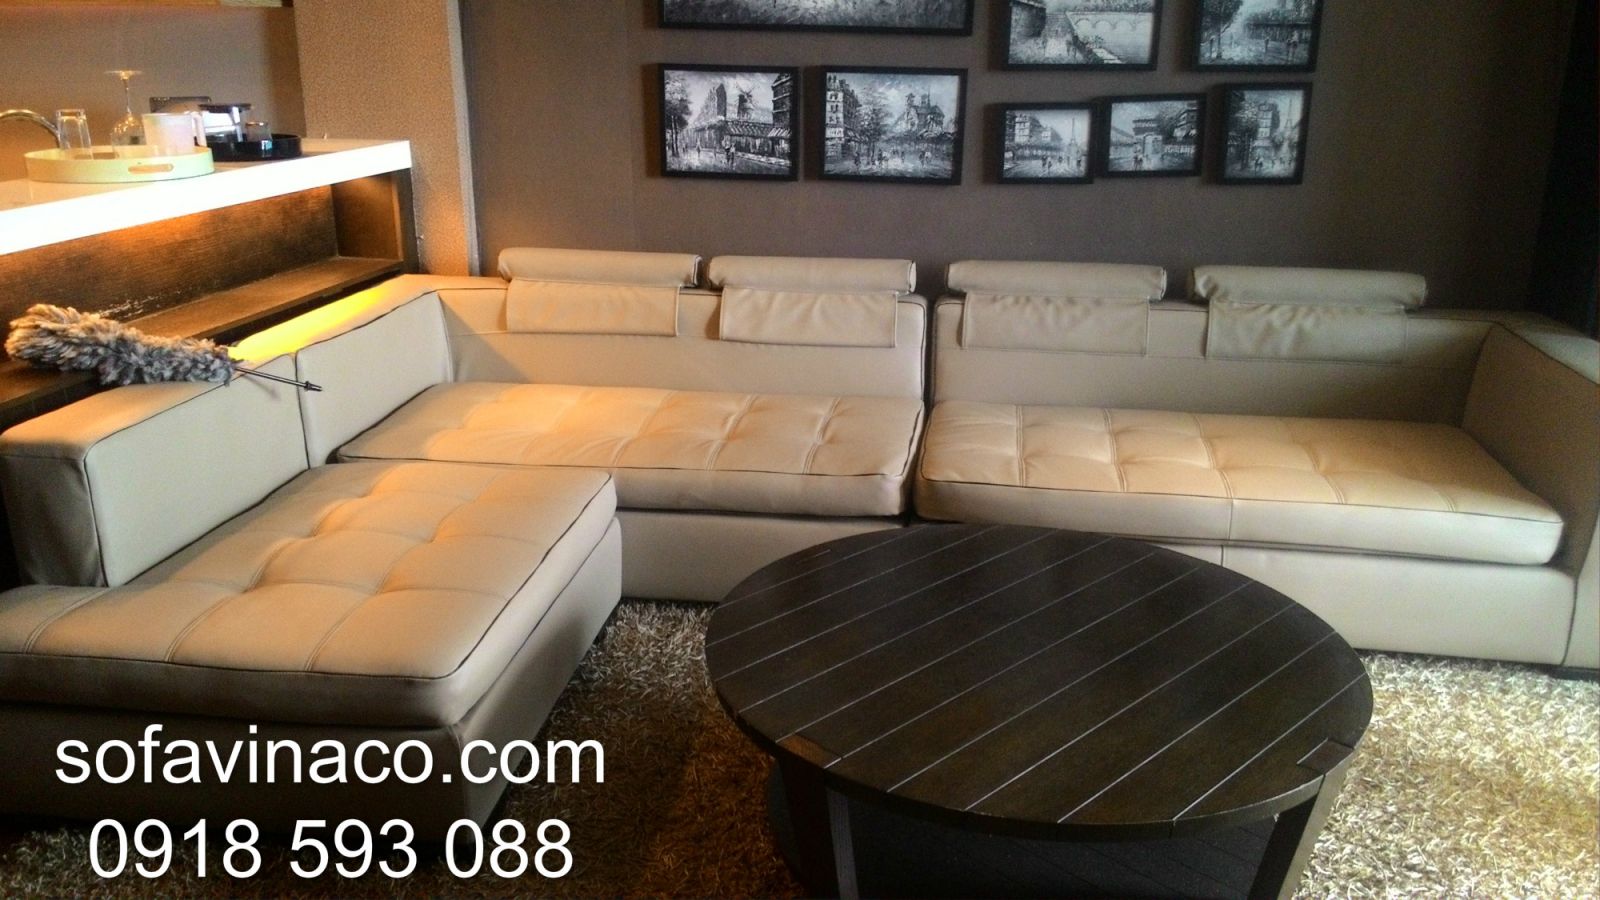 Bí quyết lựa chọn được bộ ghế sofa mang lại sự thoải mái nhất khi sử dụng